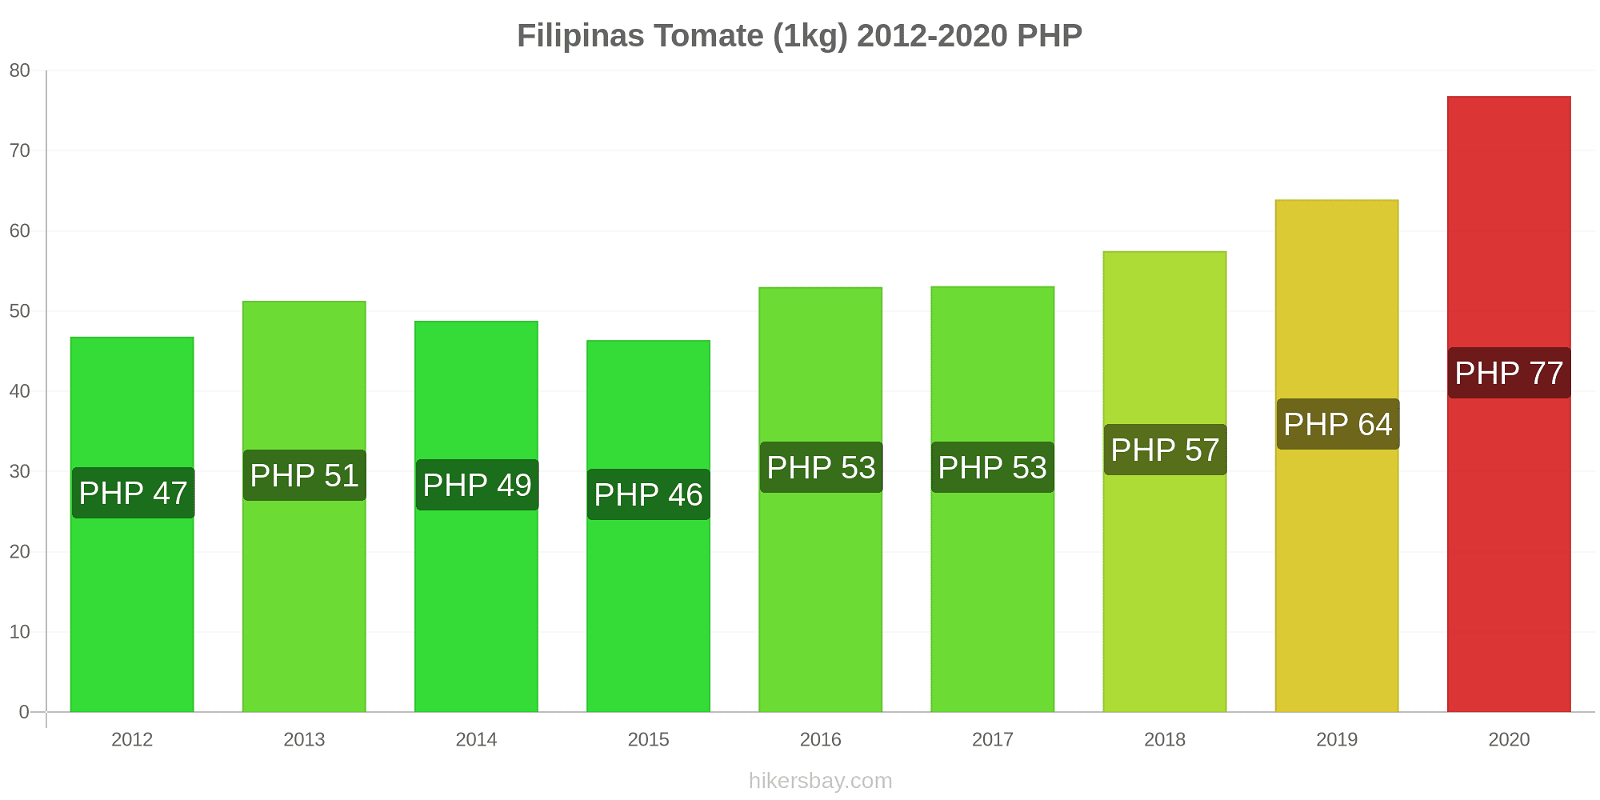 Filipinas cambios de precios Tomate (1kg) hikersbay.com